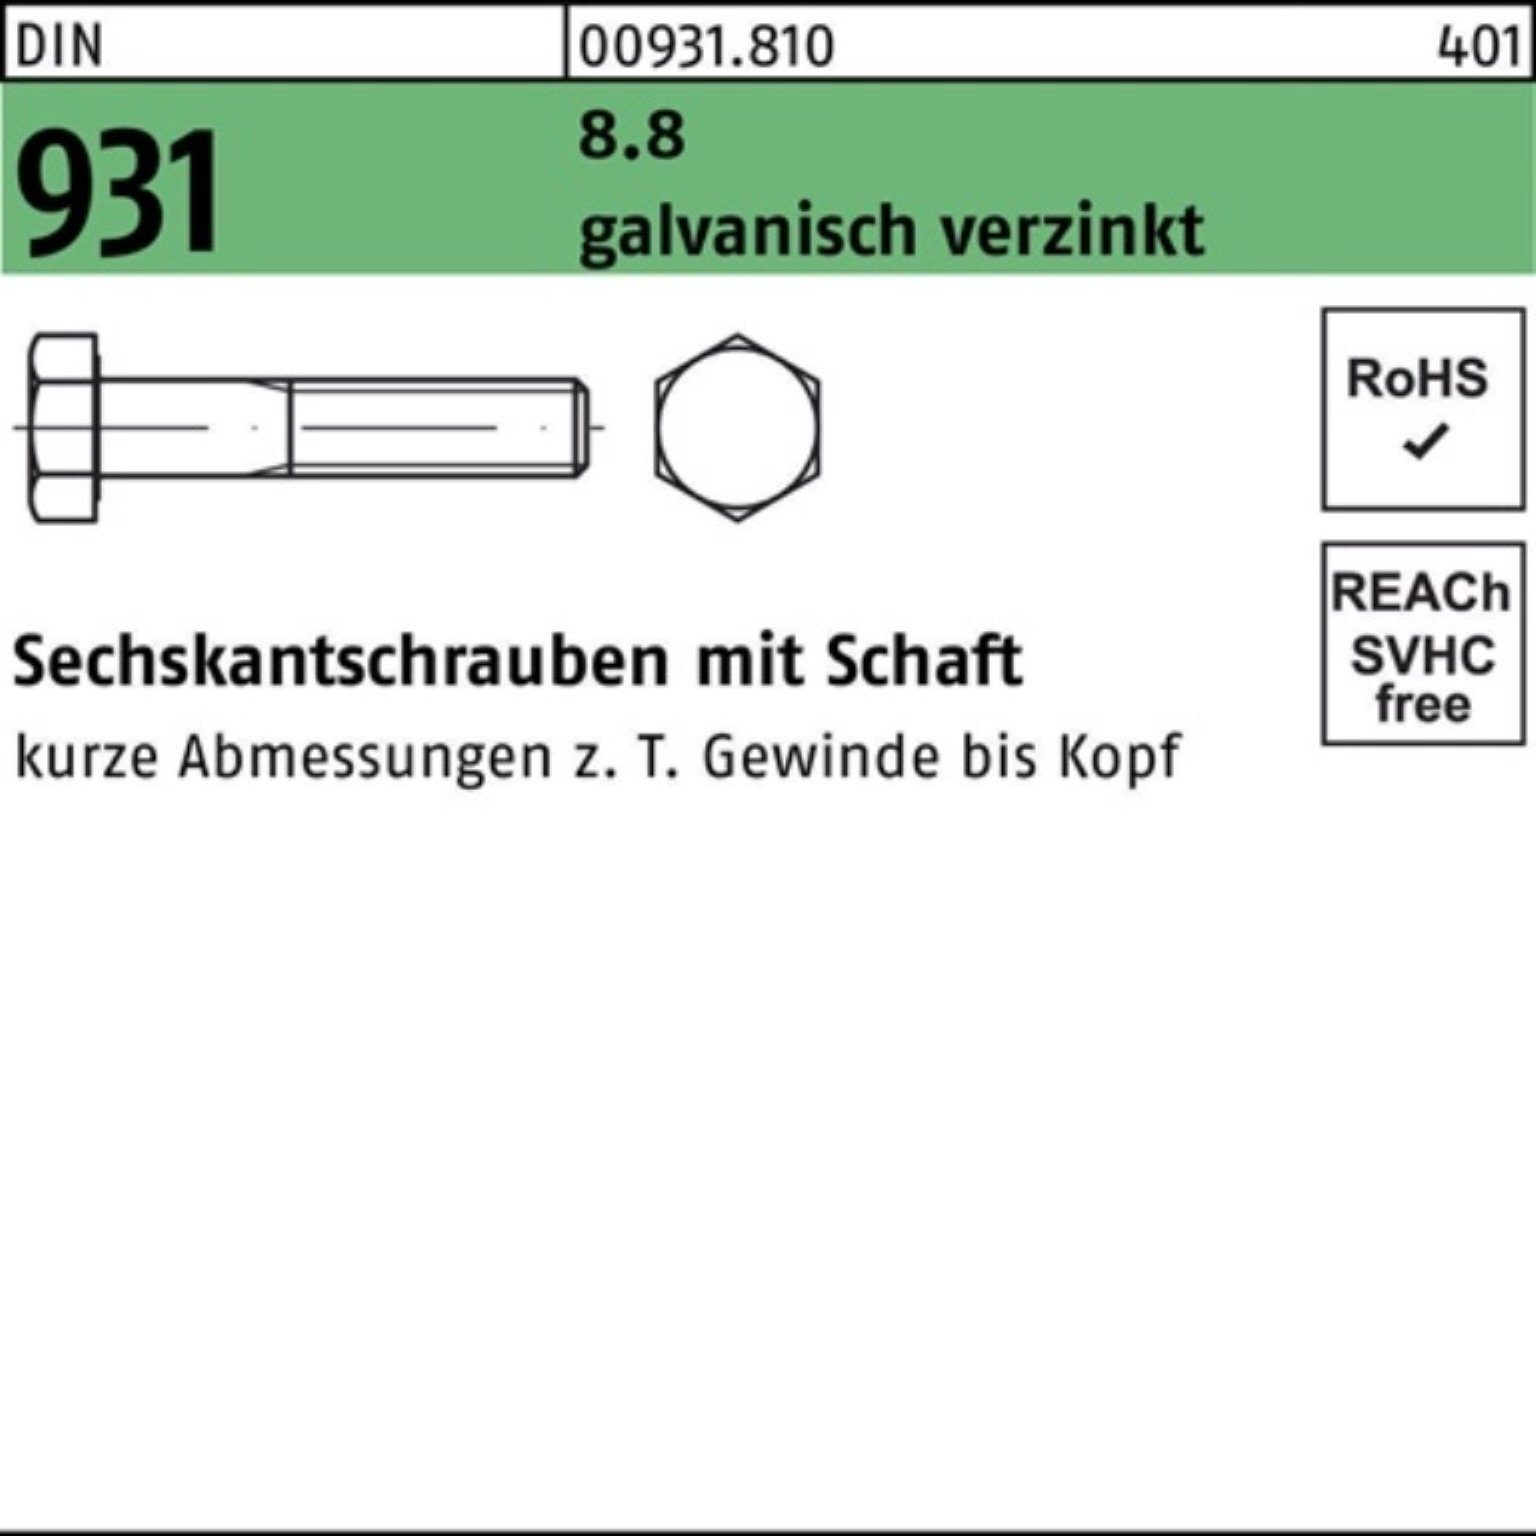 150 Reyher Sechskantschraube Pack M30x Schaft 1 8.8 DIN 100er 931 Sechskantschraube galv.verz.